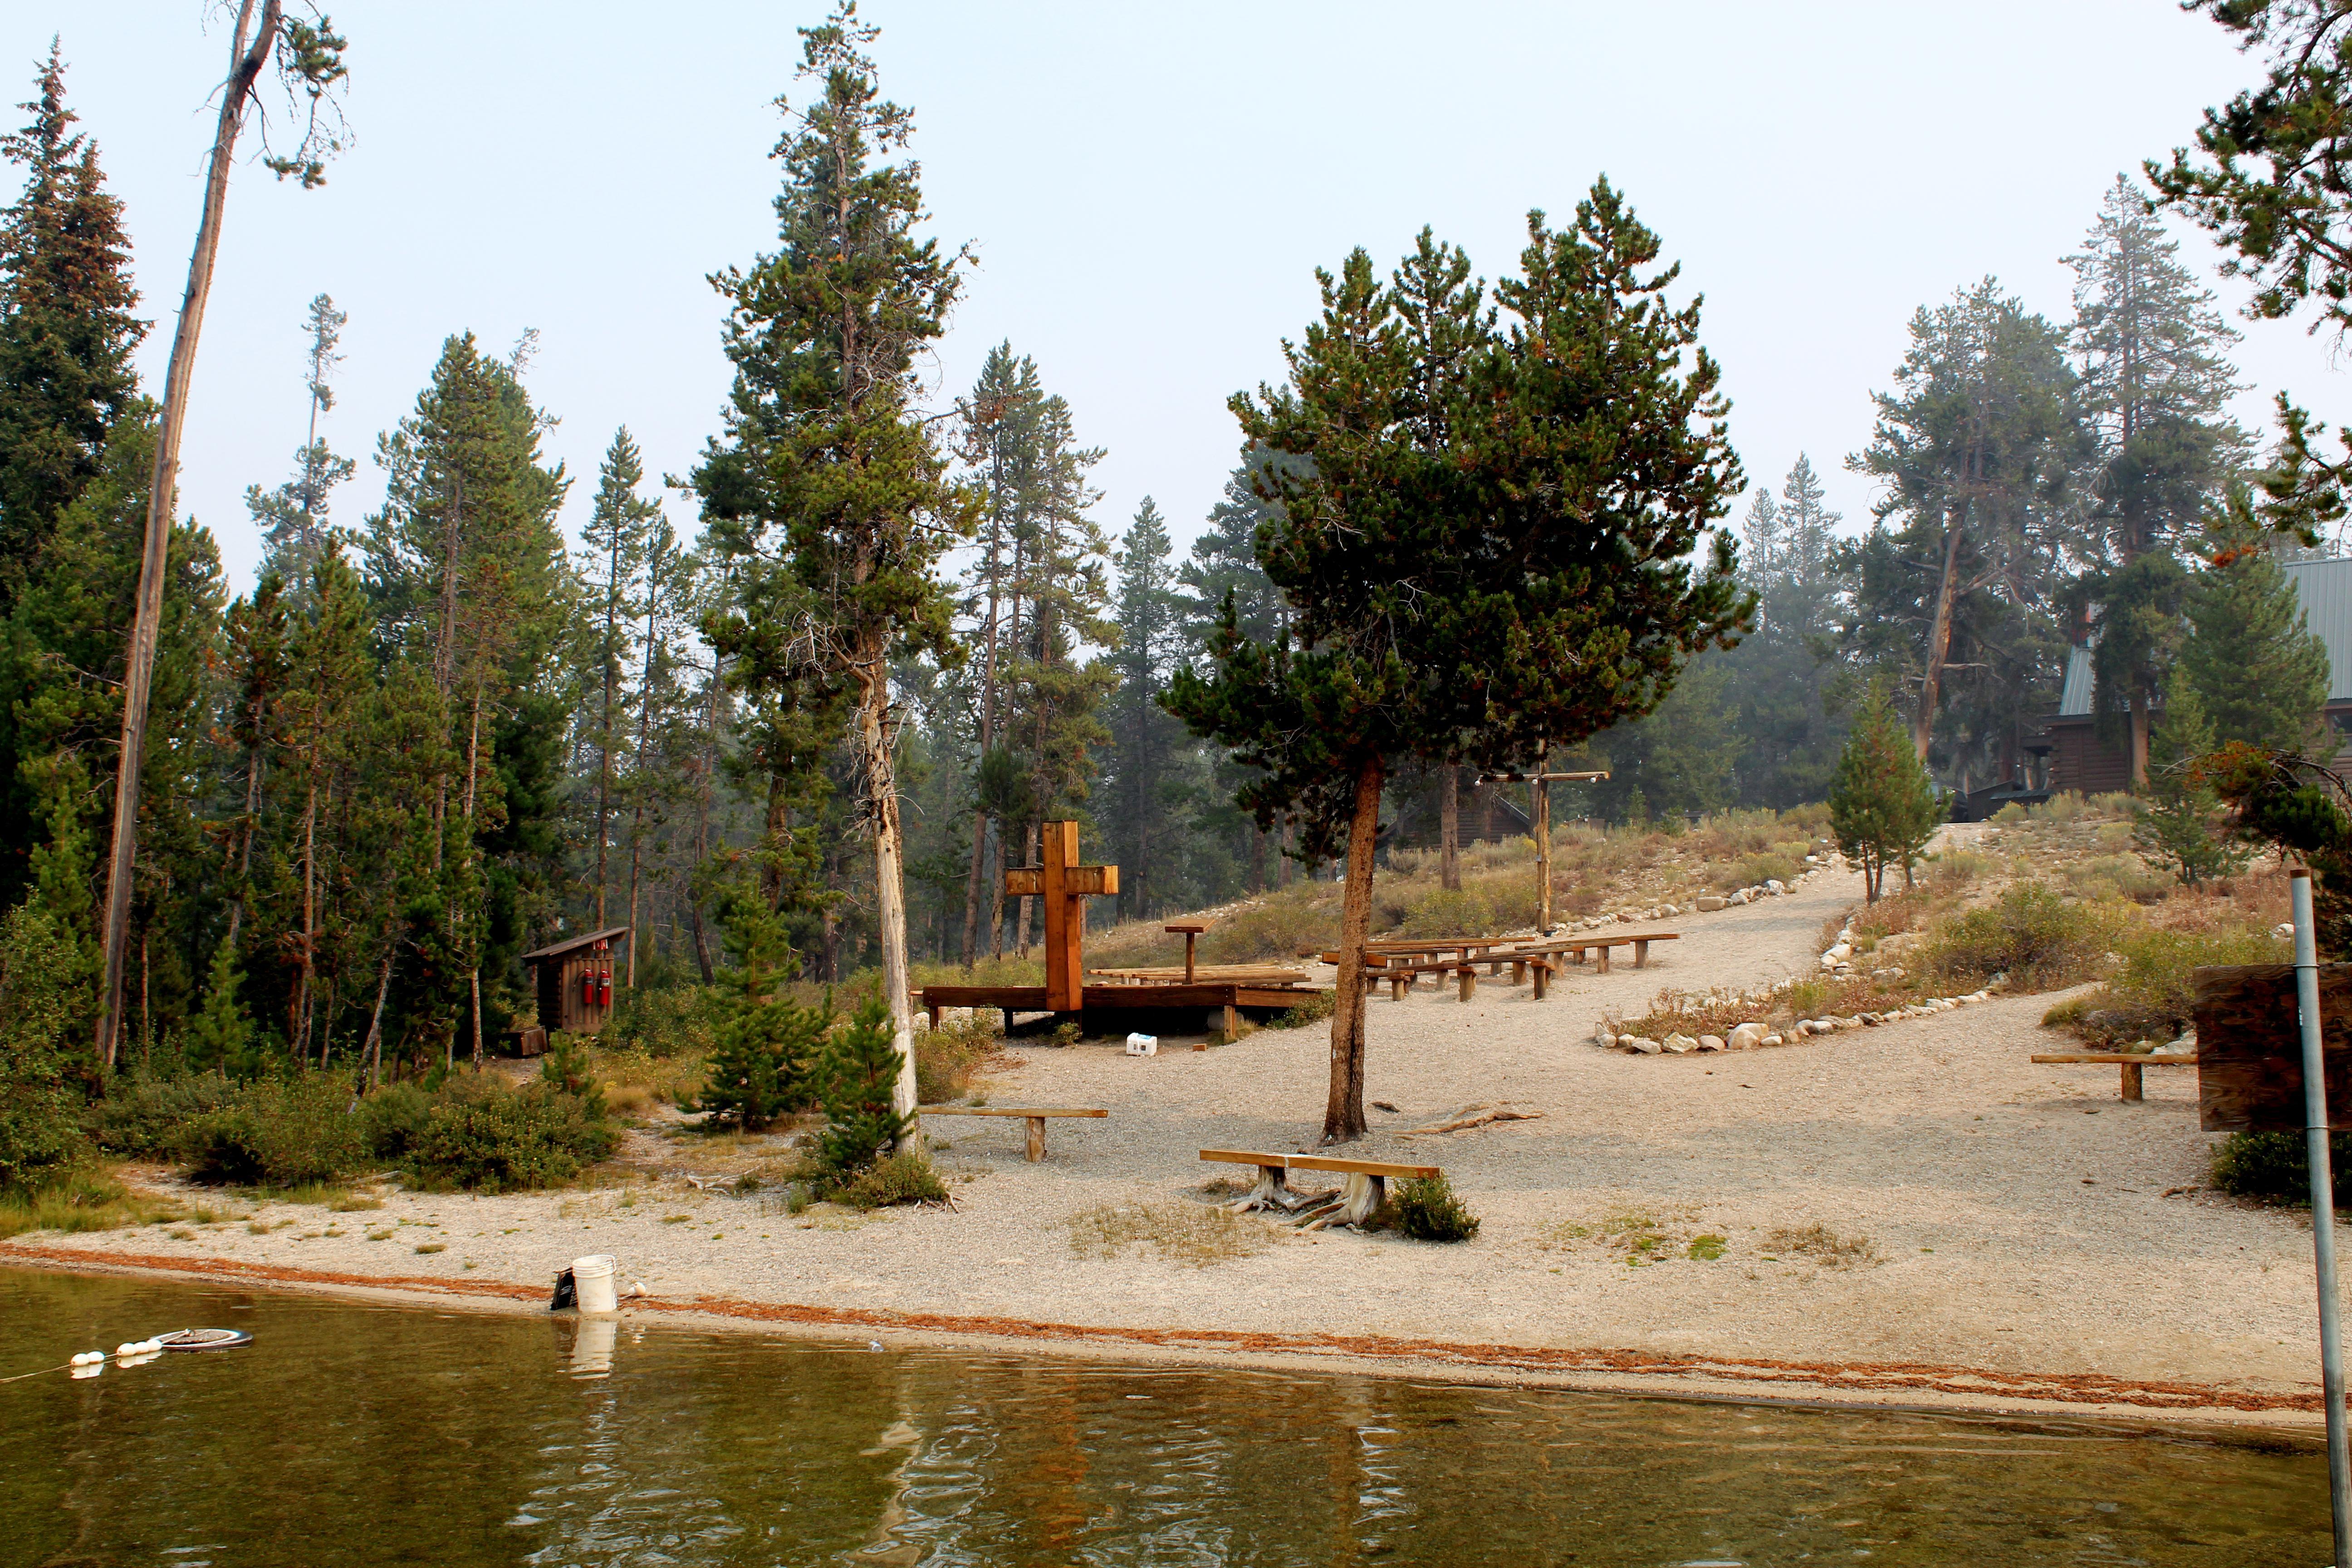 camp perkins at shore of lake